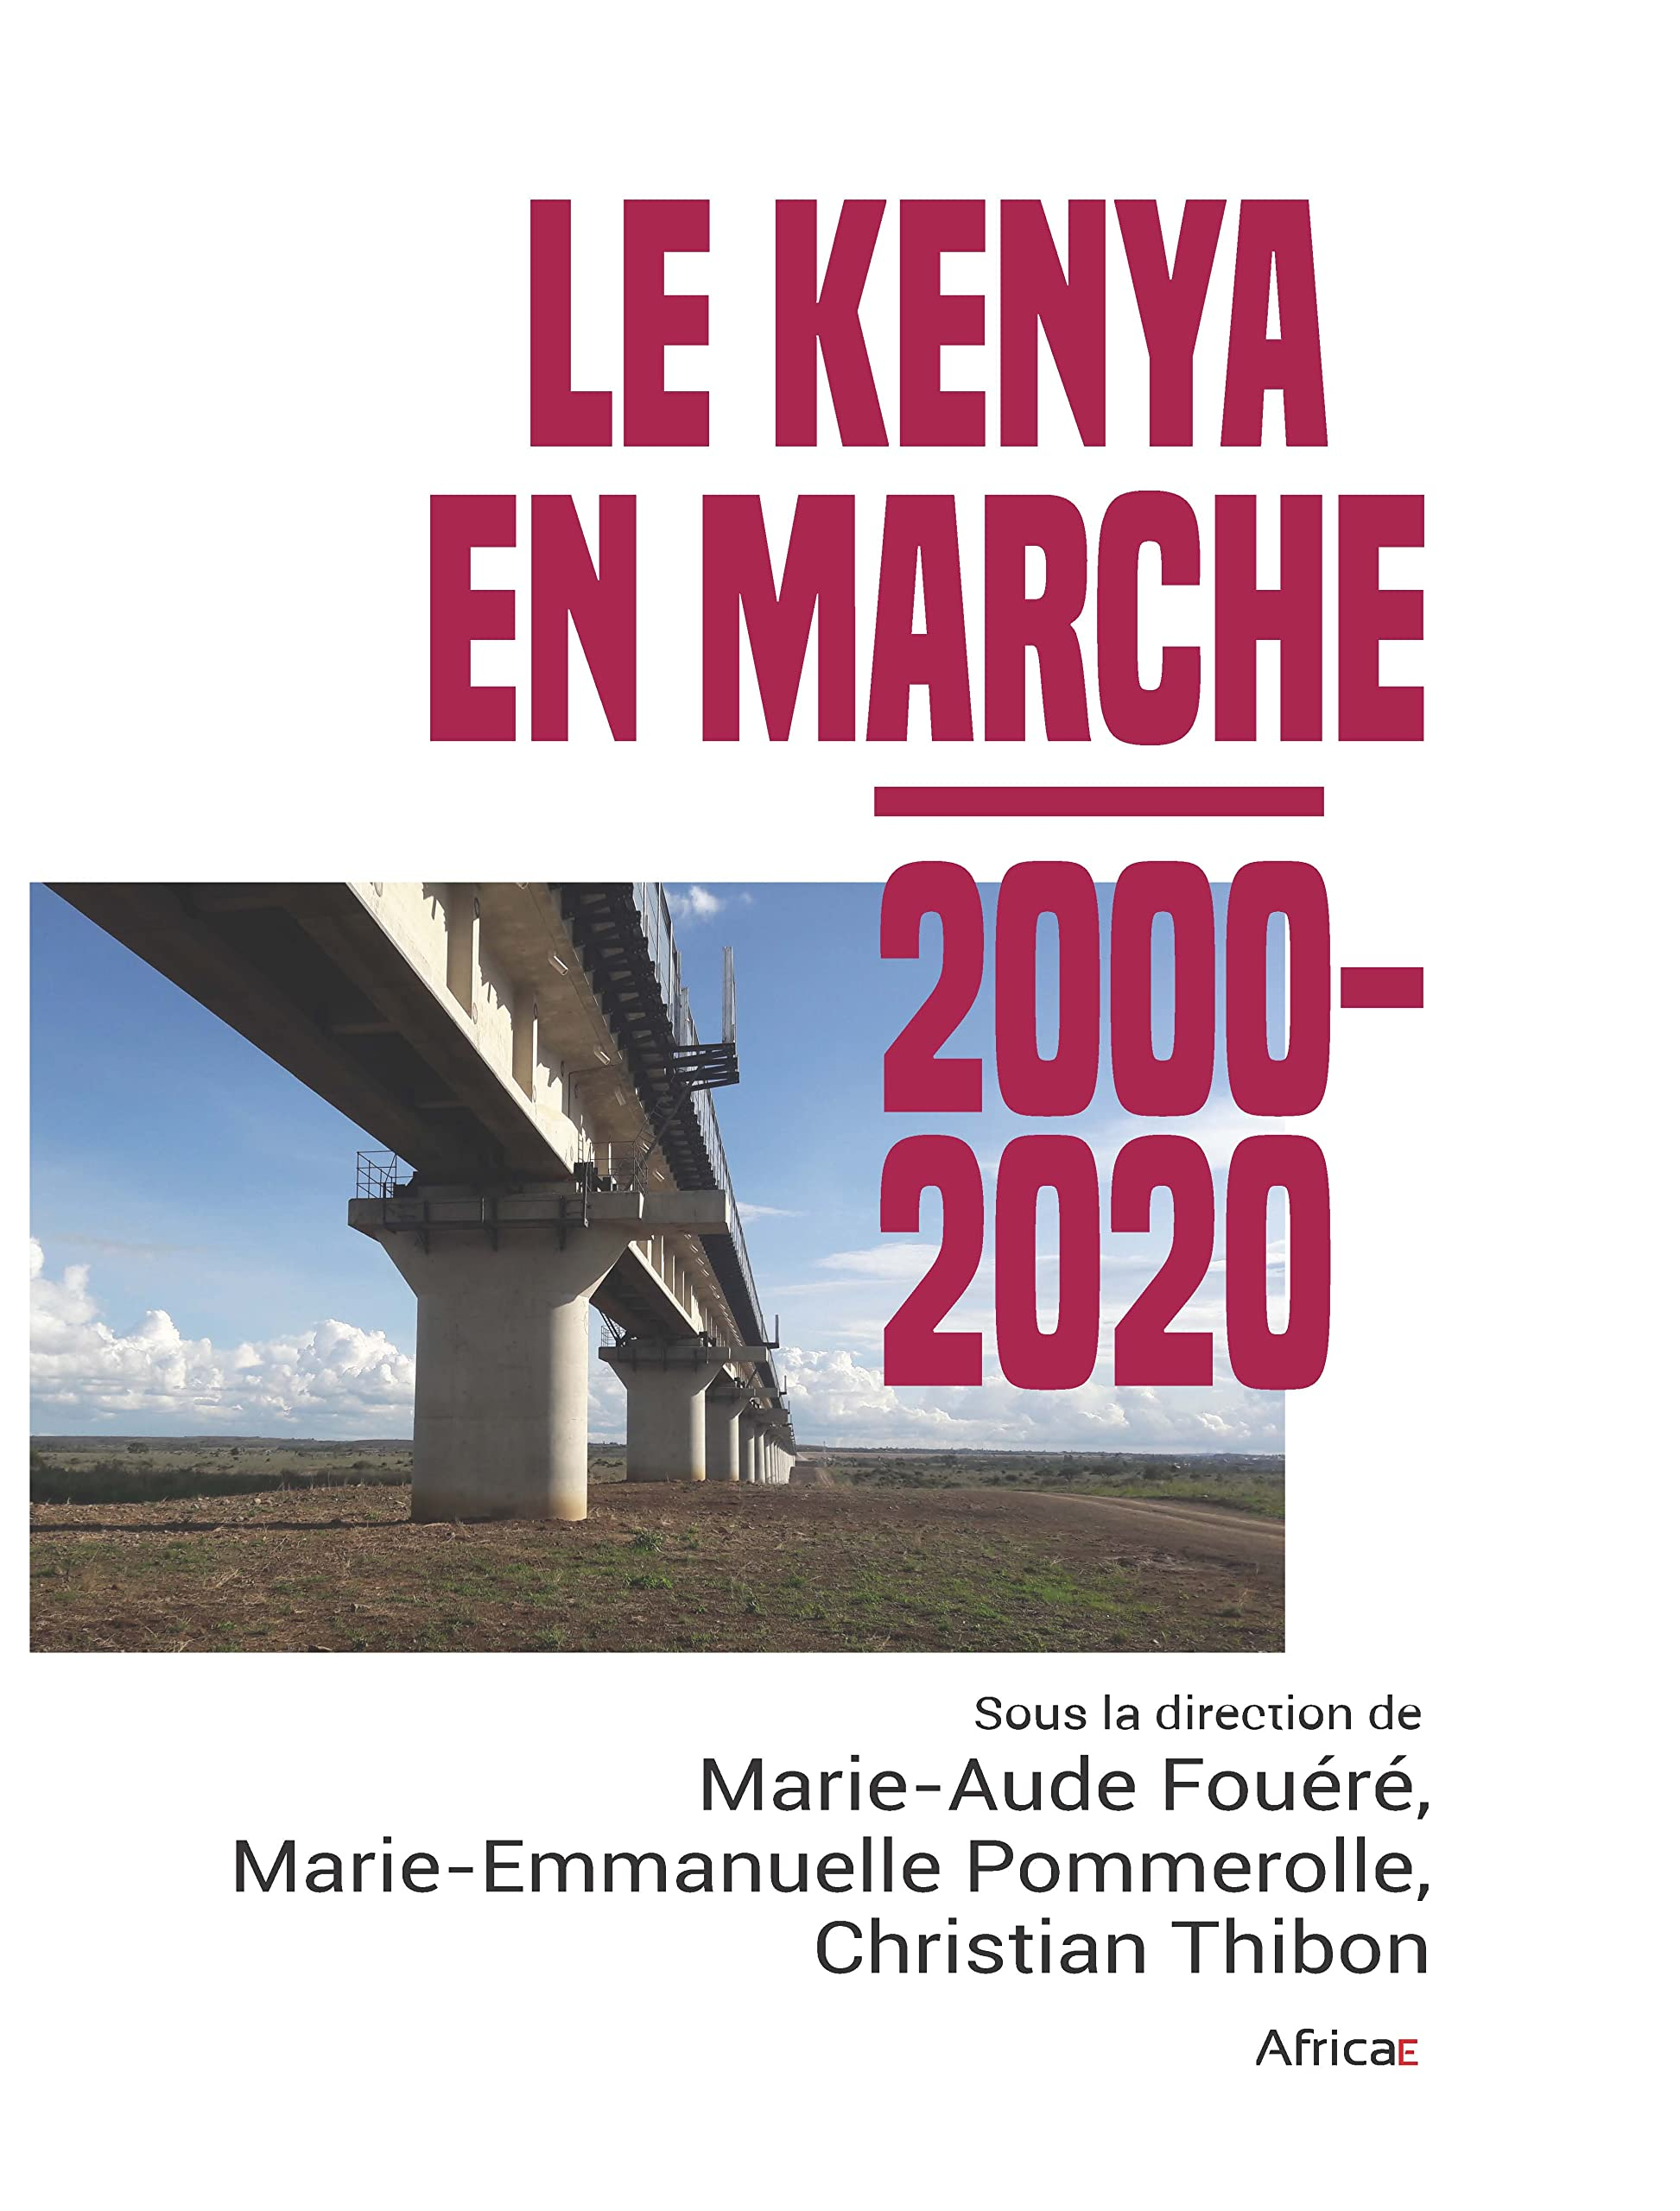 Le Kenya en marche. 2000-2020